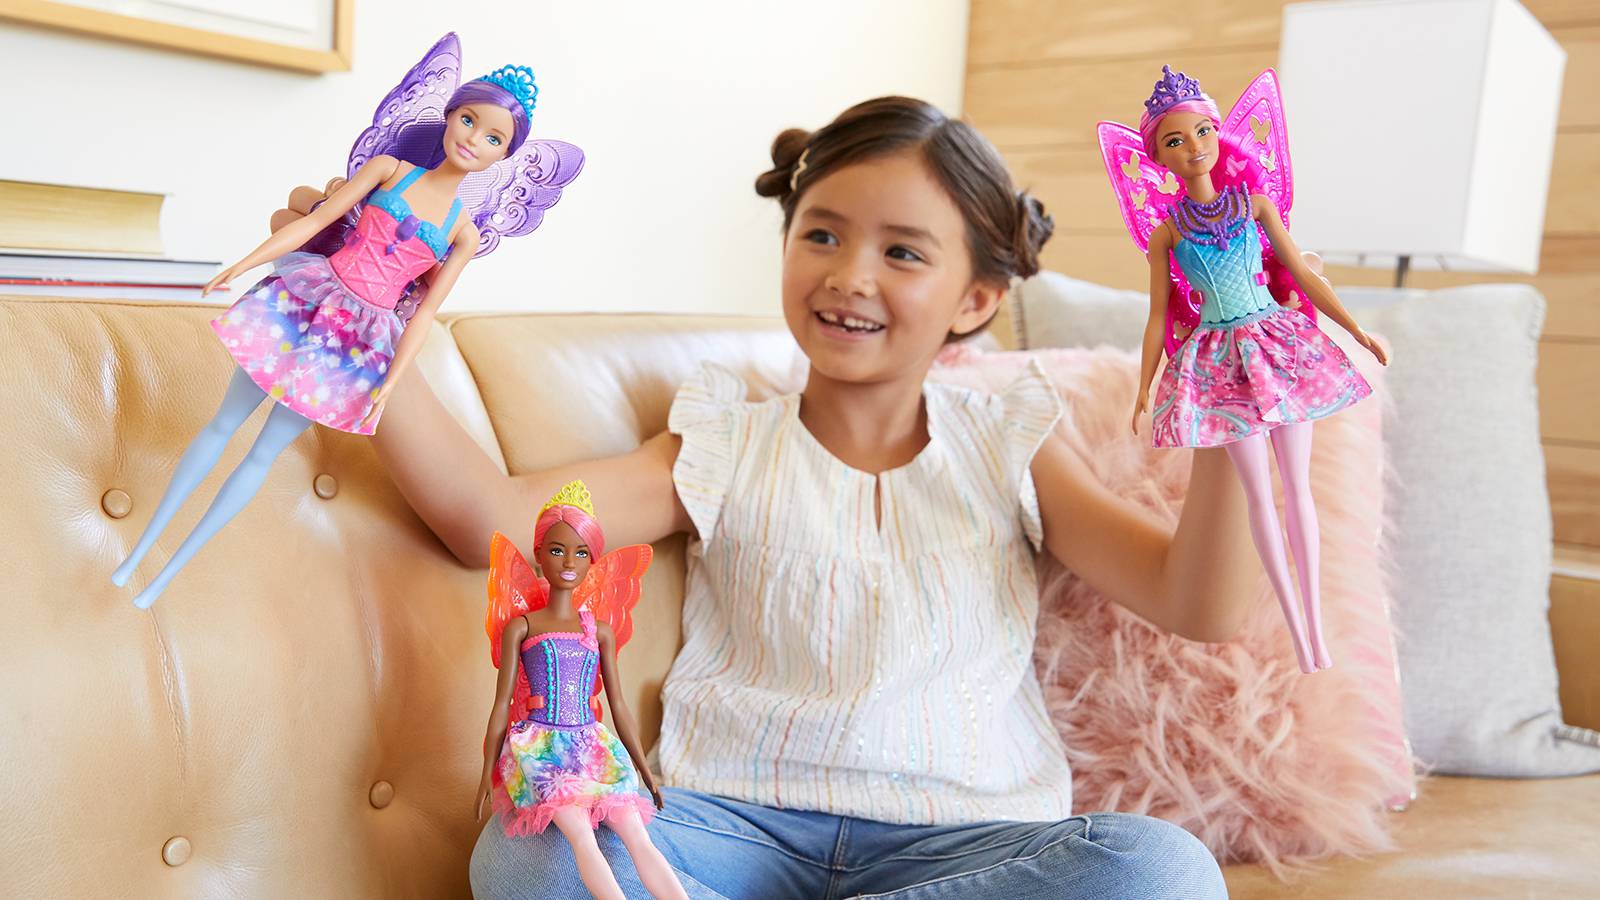 Istraživanje pokazalo da igra s lutkama pomaže djeci u razvoju empatije i socijalnih vještina